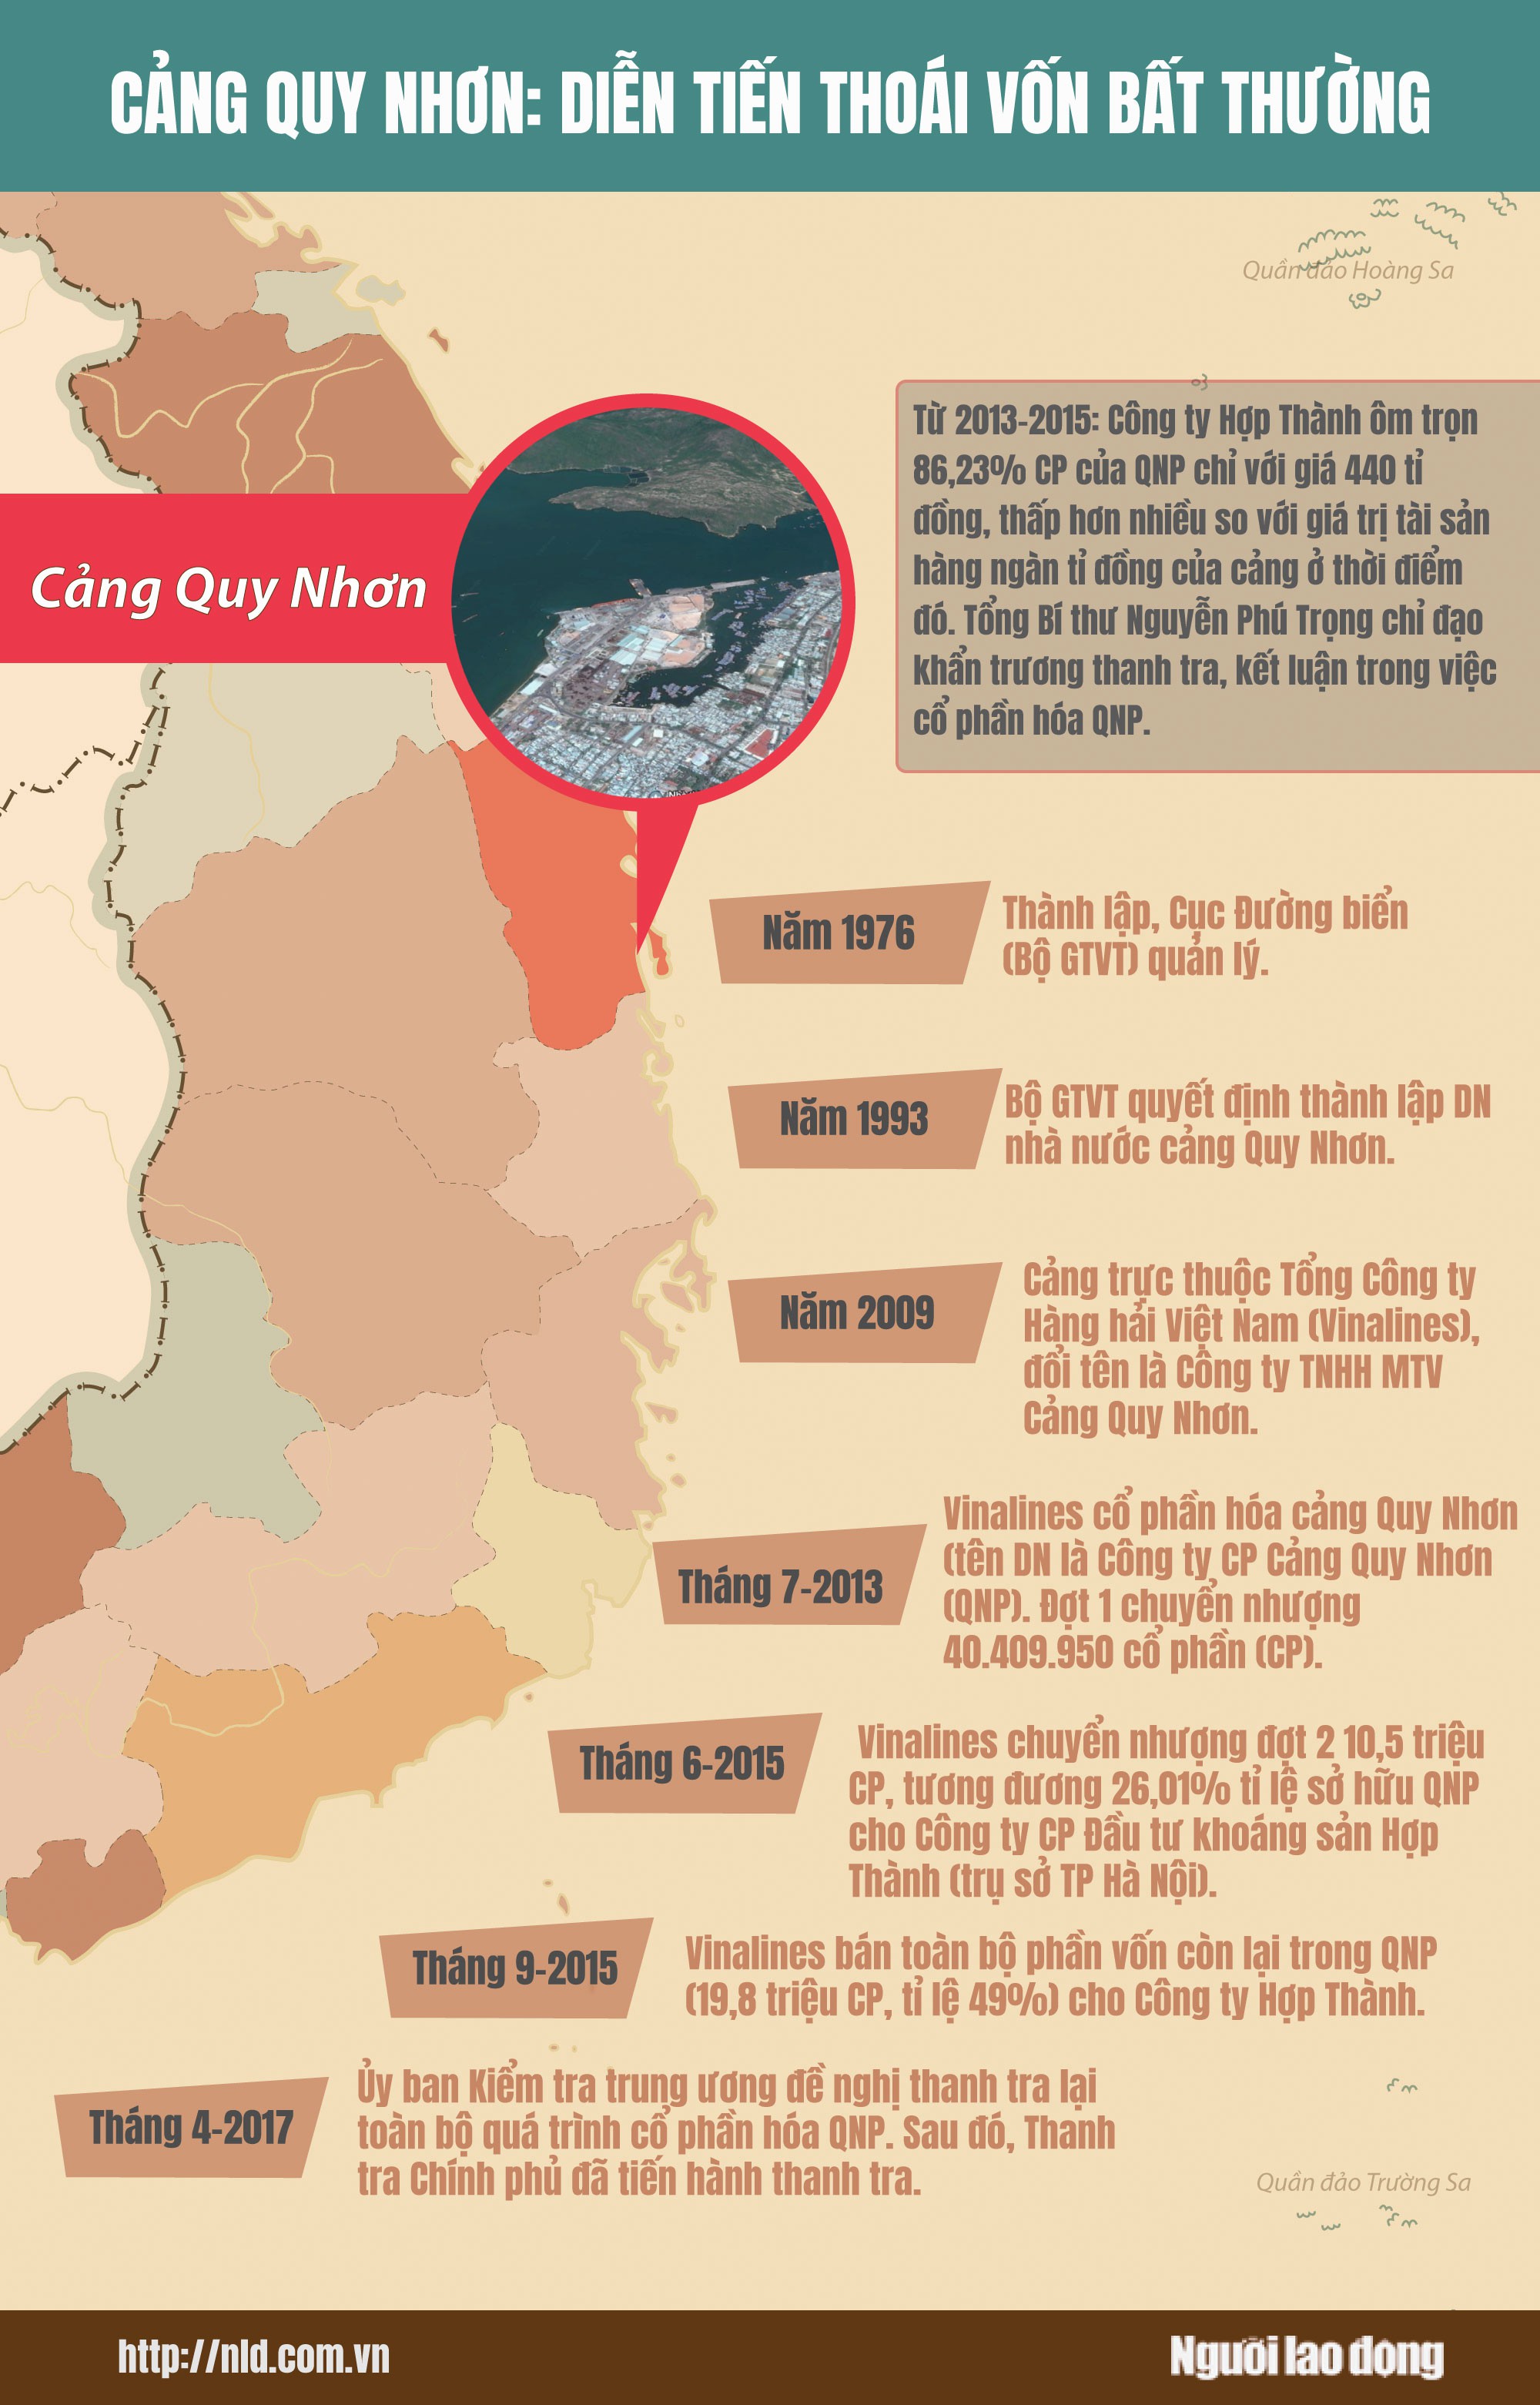 (Infographic) - Cảng Quy Nhơn: Thoái vốn bất thường - Ảnh 1.